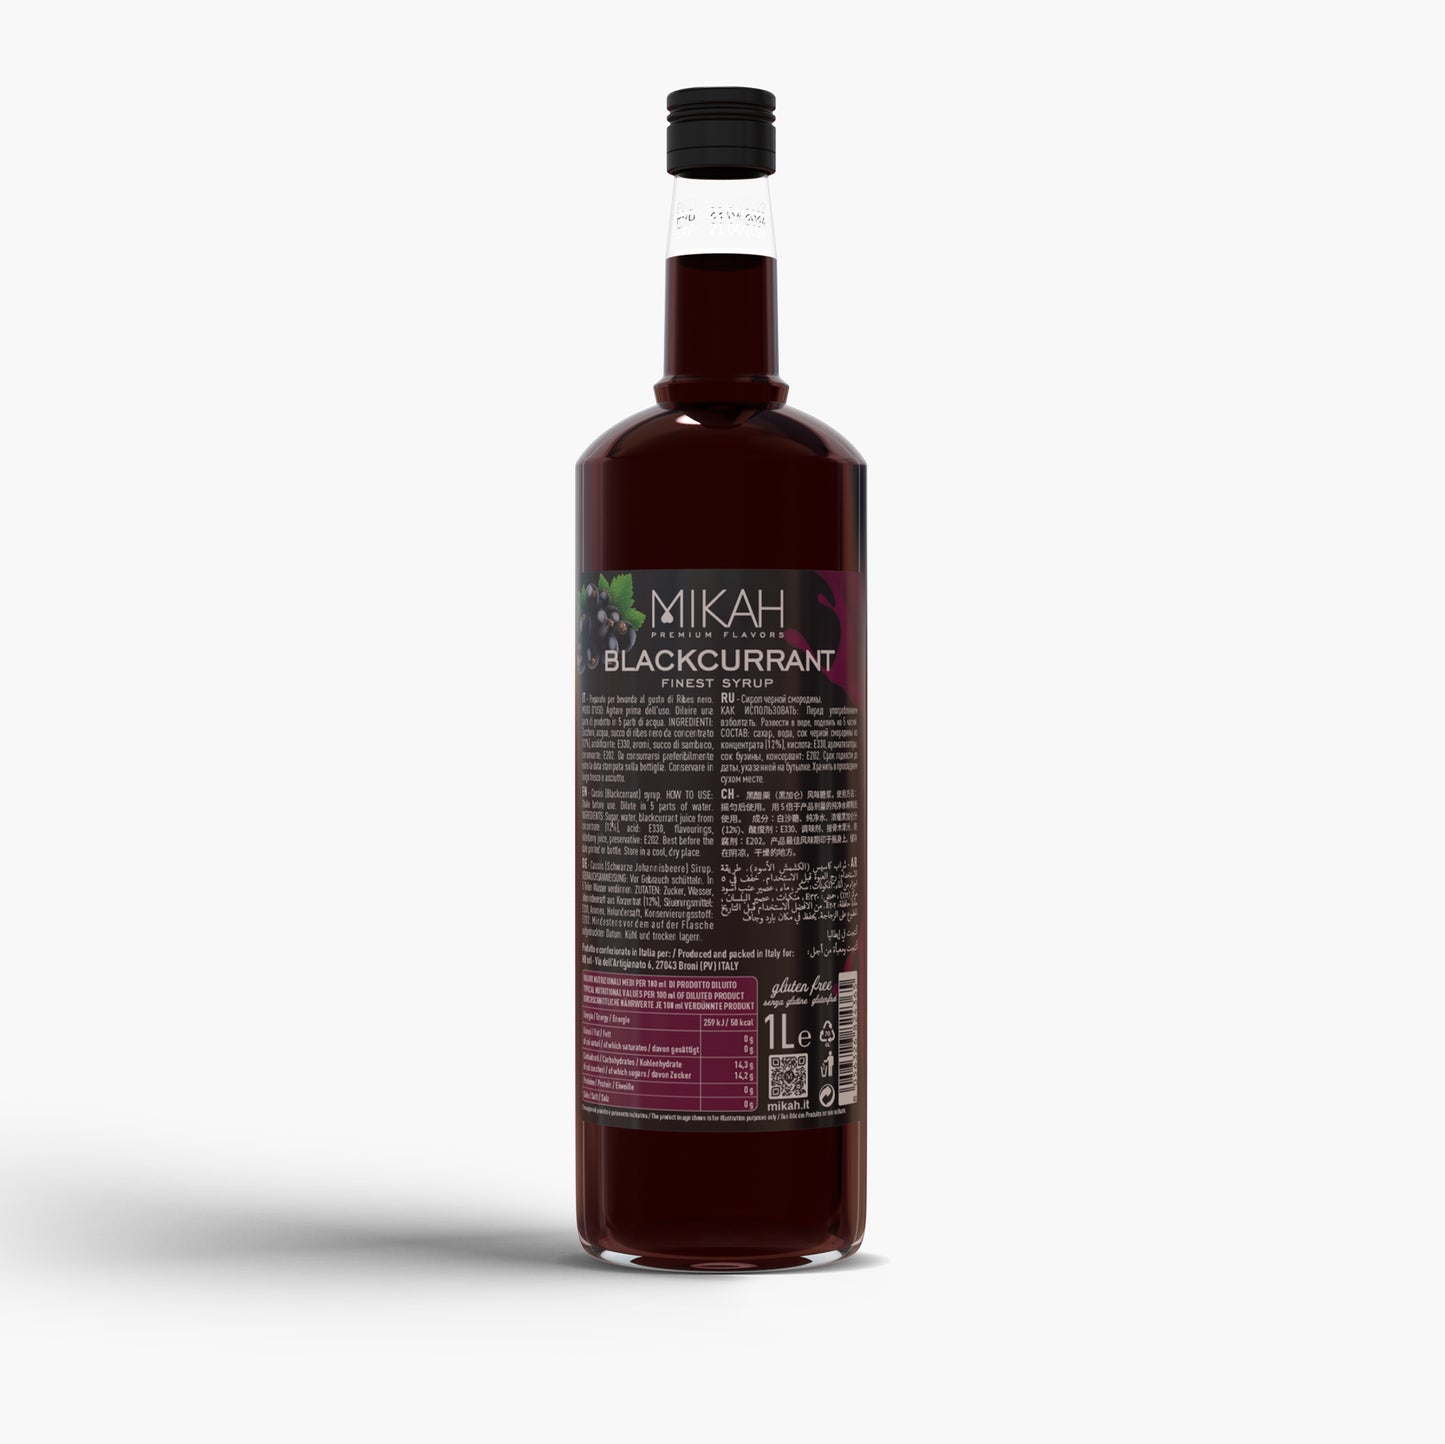 
                  
                    Sciroppo Mikah Premium Flavors - Blackcurrant (Ribes Nero) 1L
                  
                